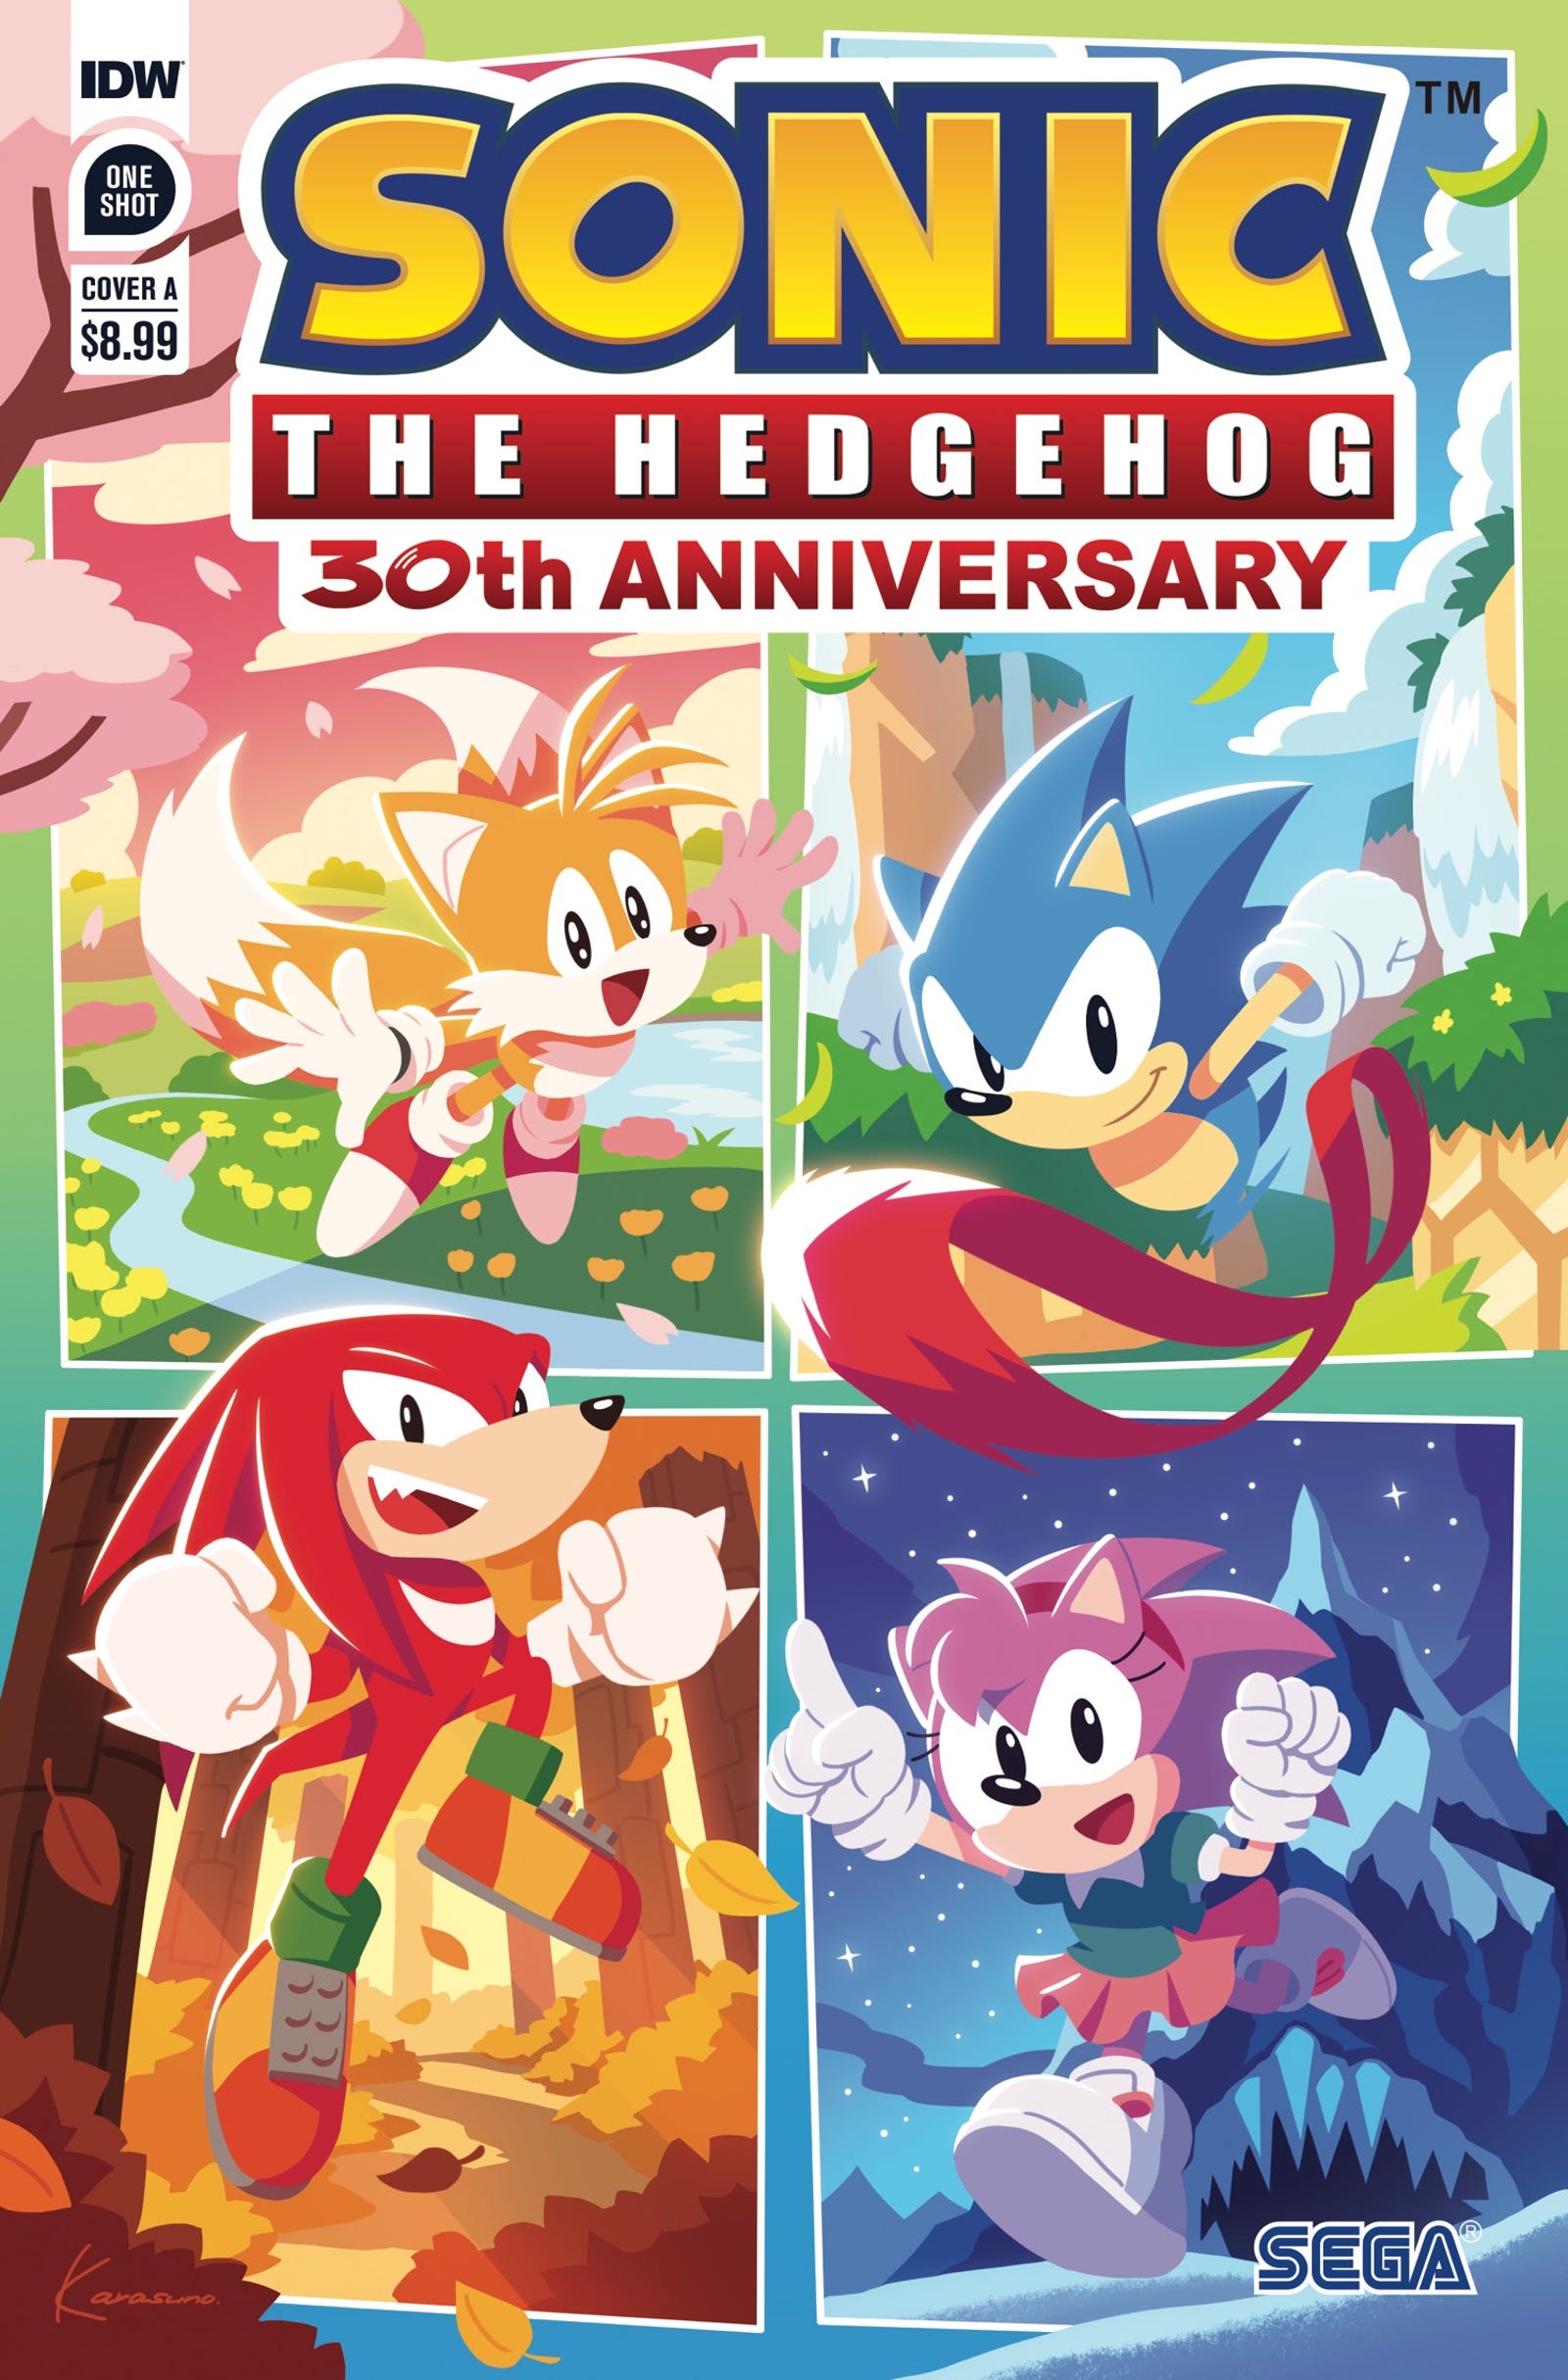 Comemore o 30º aniversário do Sonic em grande estilo (Quadrinhos únicos da IDW para o aniversário de Sonic) 2